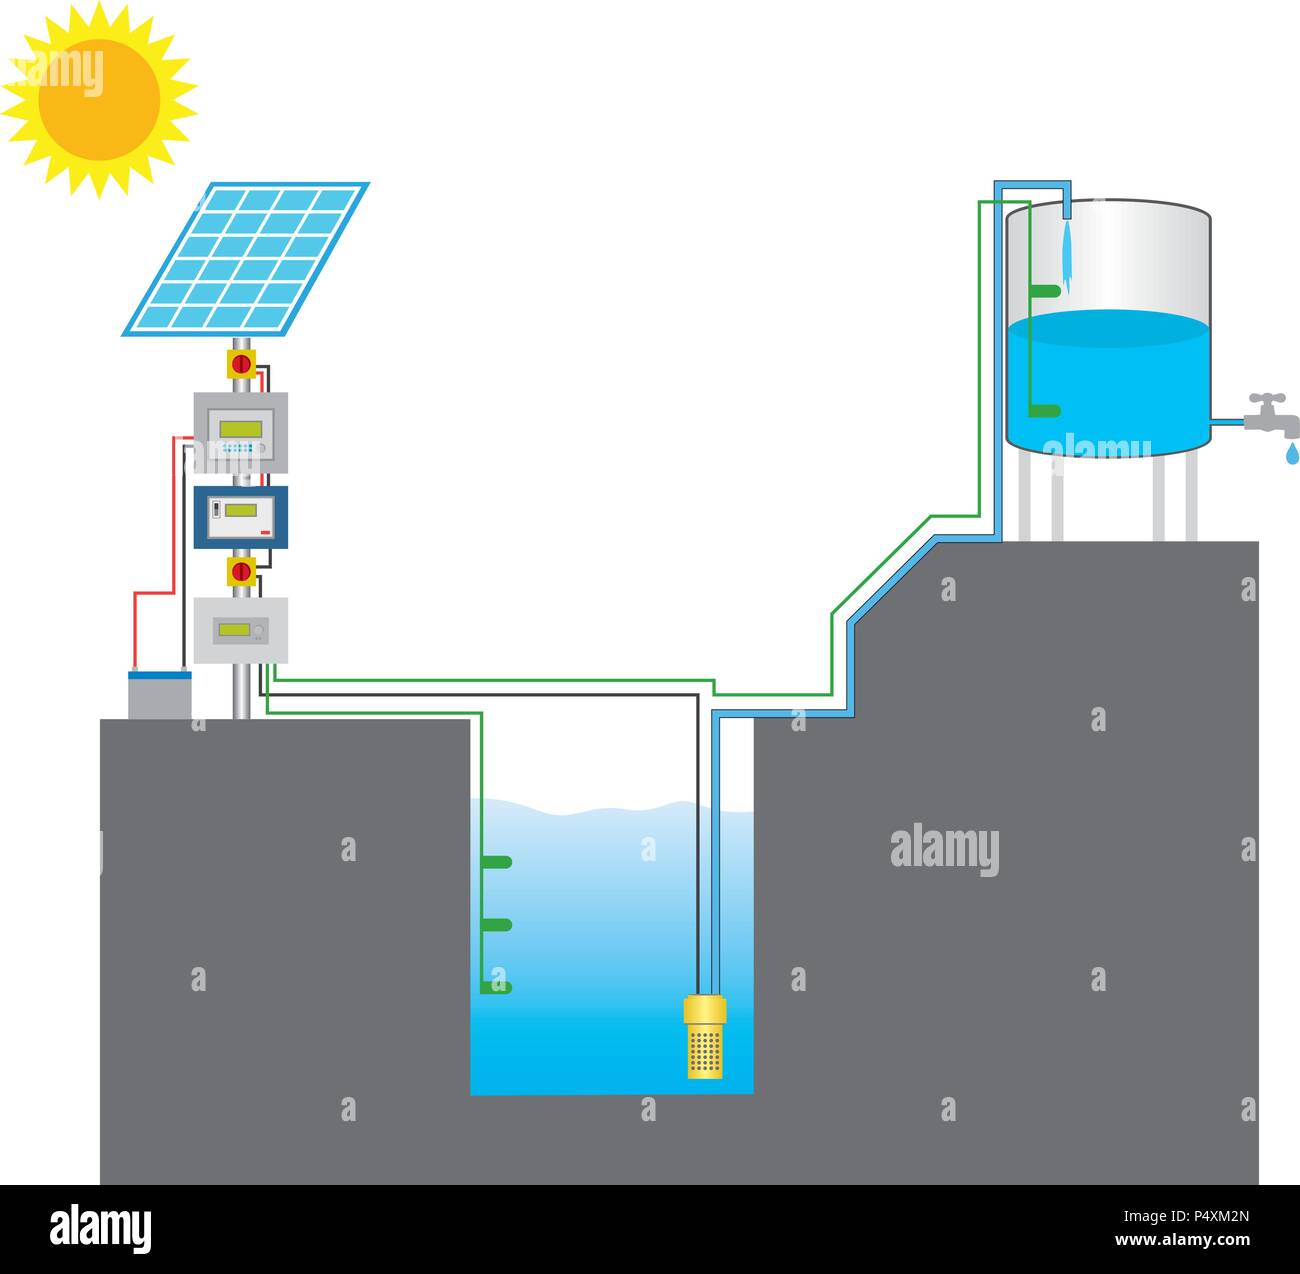 La pompe solaire est une pompe fonctionnant sur l'électricité produite par des panneaux photovoltaïques ou la puissance de l'énergie thermique disponible à partir de la lumière du soleil recueillis Illustration de Vecteur